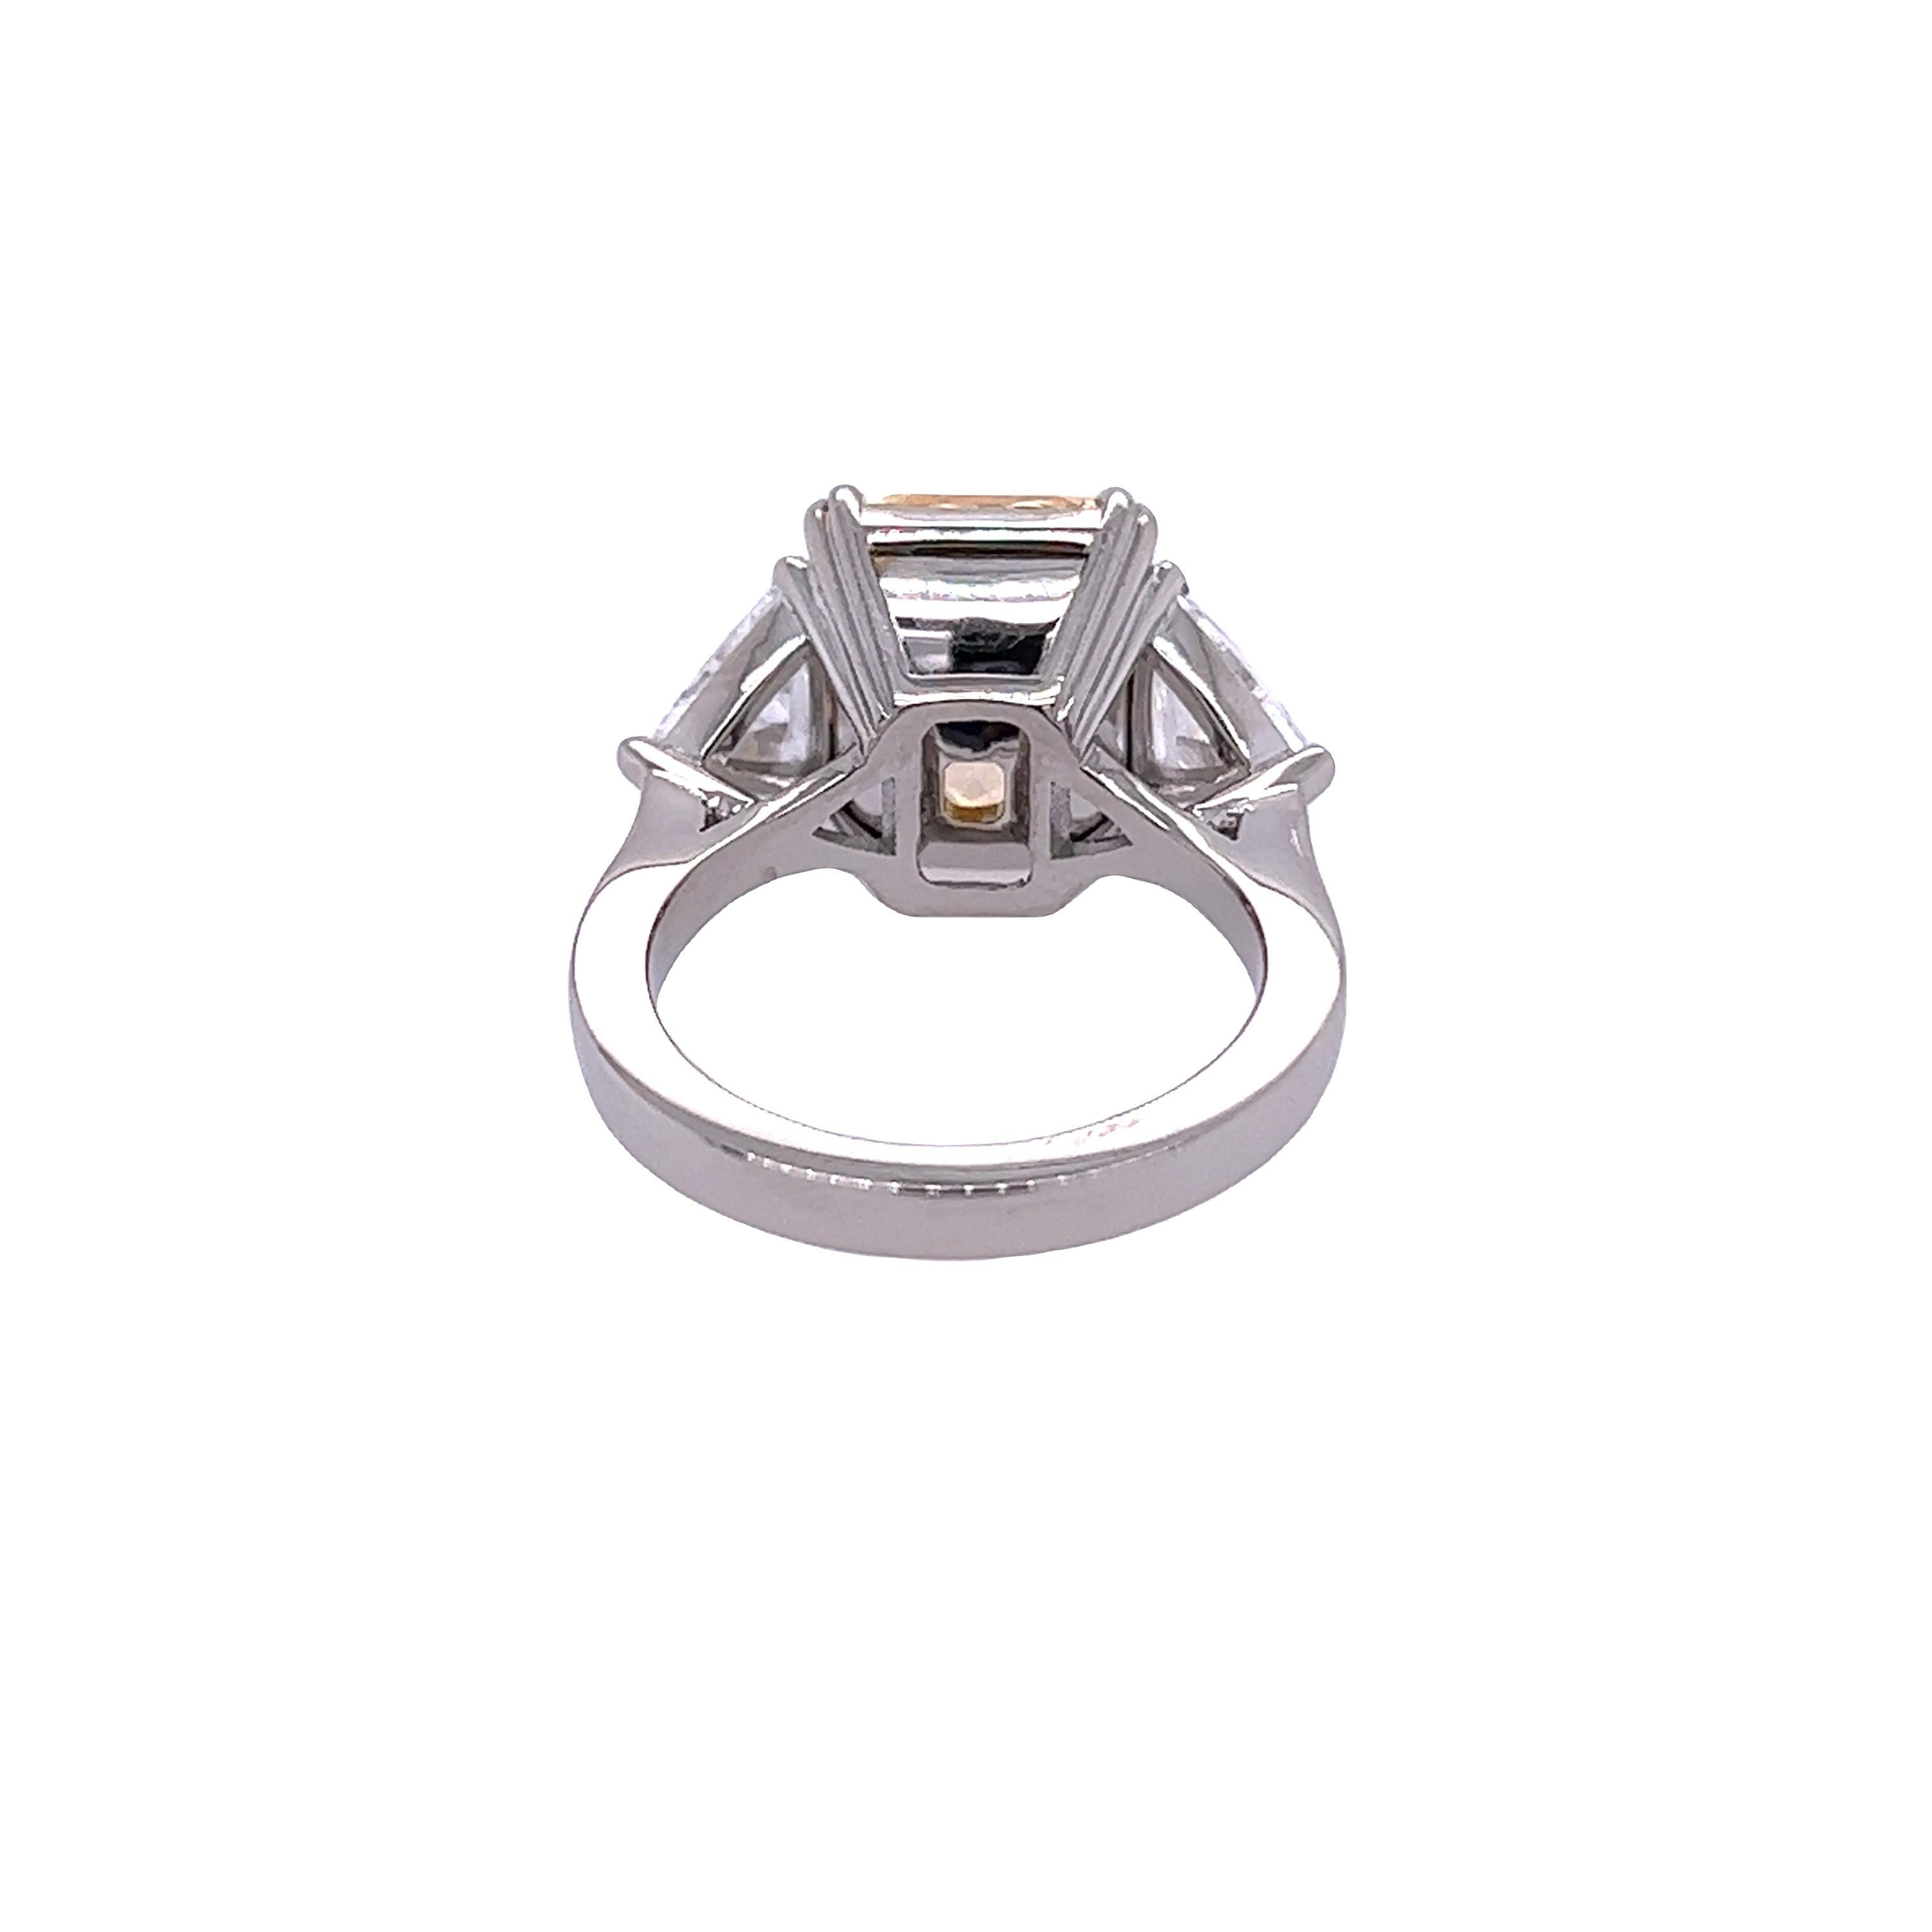 Modern David Rosenberg 5.68 ct Fancy Light Yellow Radiant GIA Diamond Engagement Ring For Sale